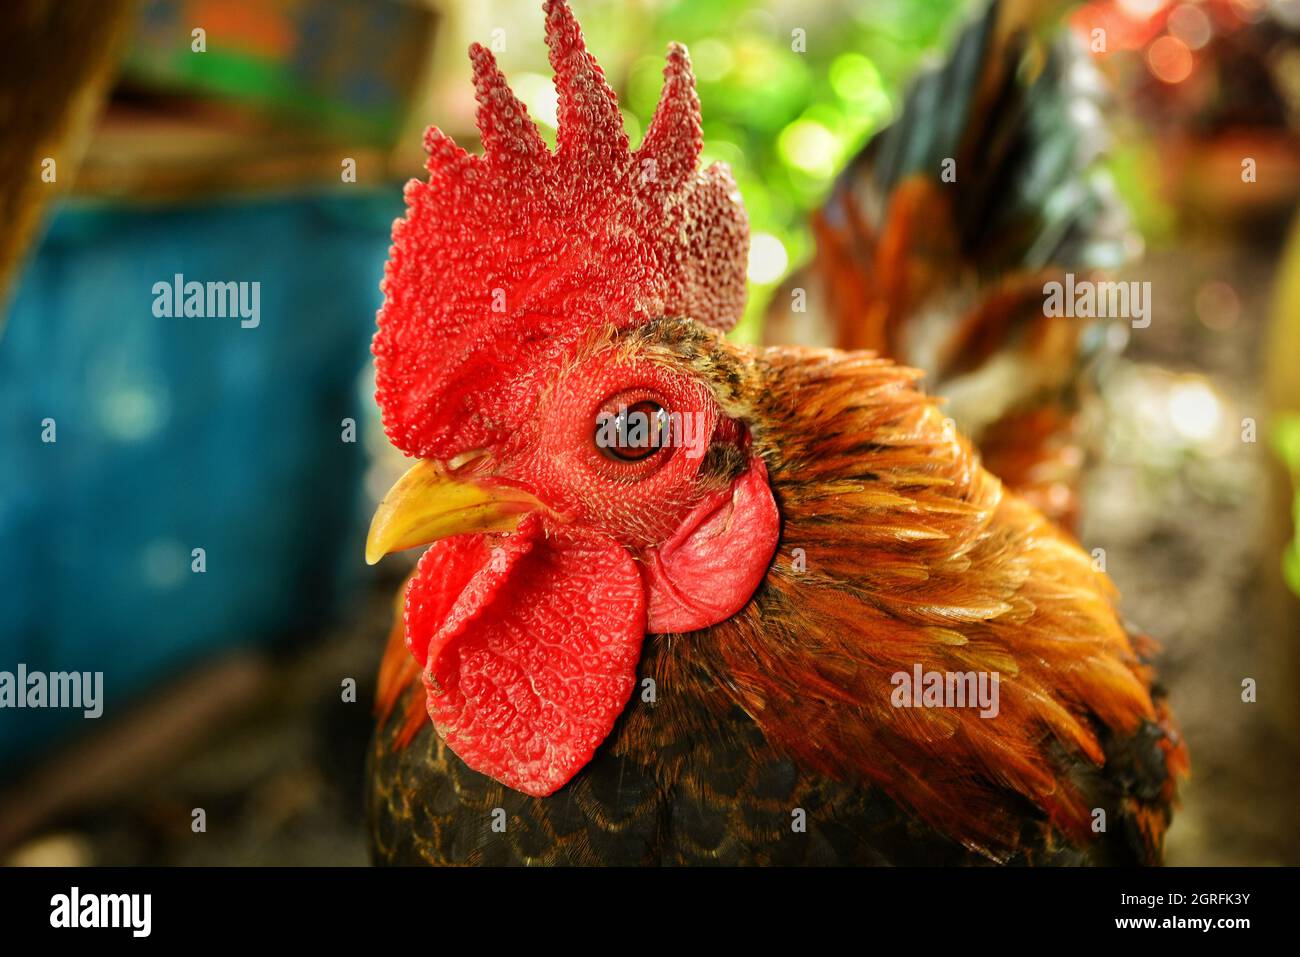 Magnifique poulet nain à la ferme Banque D'Images